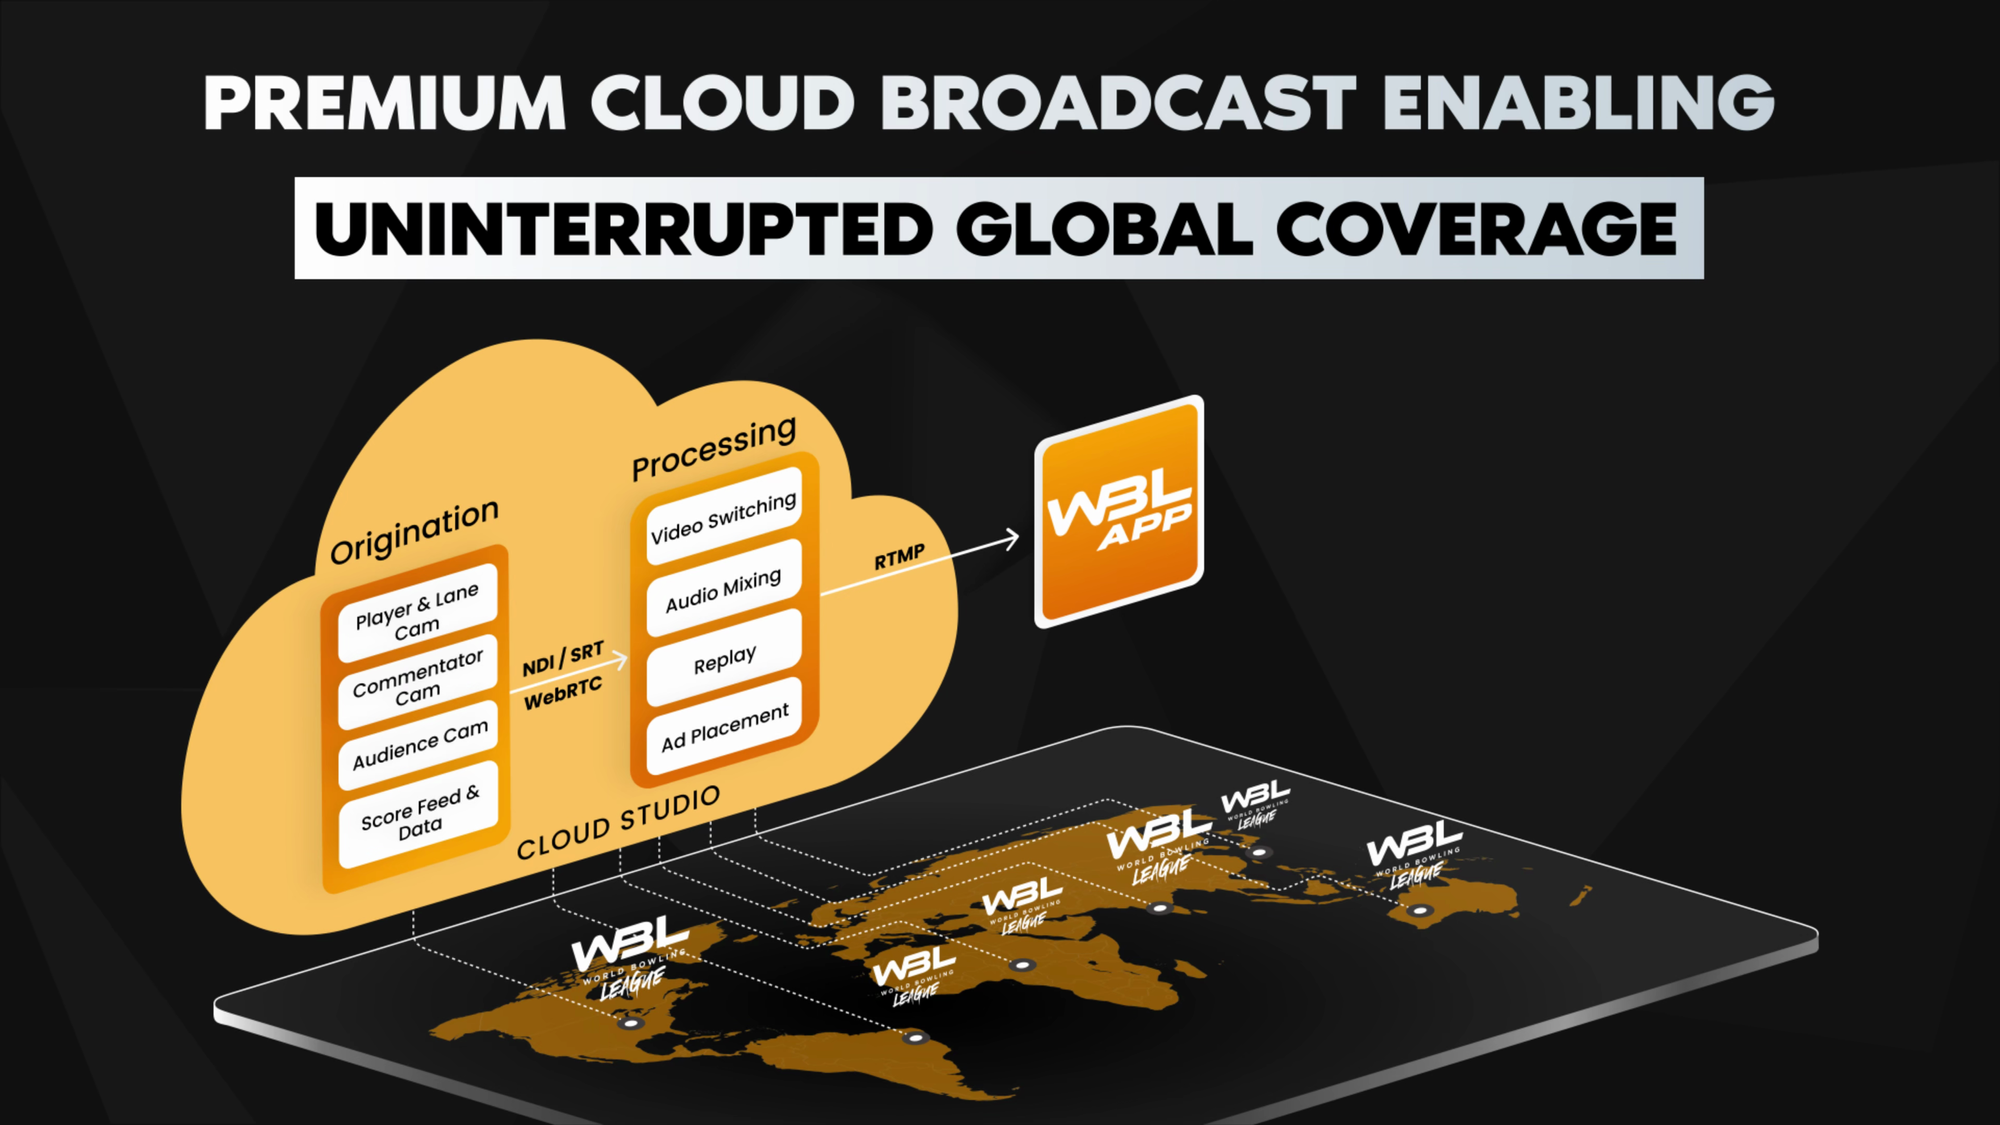 WBL's Premium Cloud Broadcast Technology